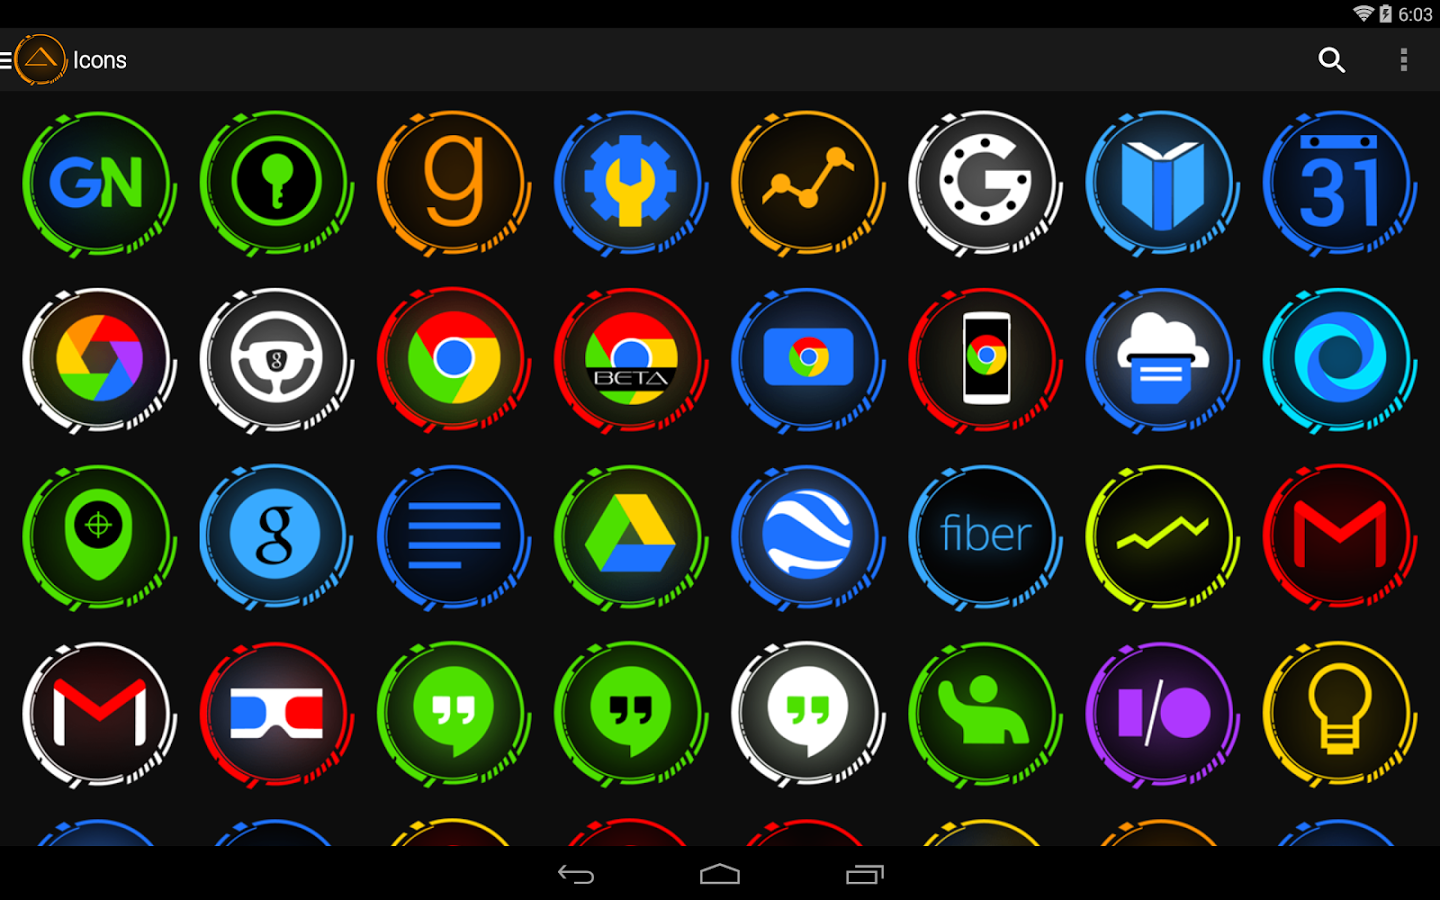 Значки на иконках андроид. Иконка андроид. Иконки для приложений. Иконки приложений для андроид. Красивые значки для приложений.